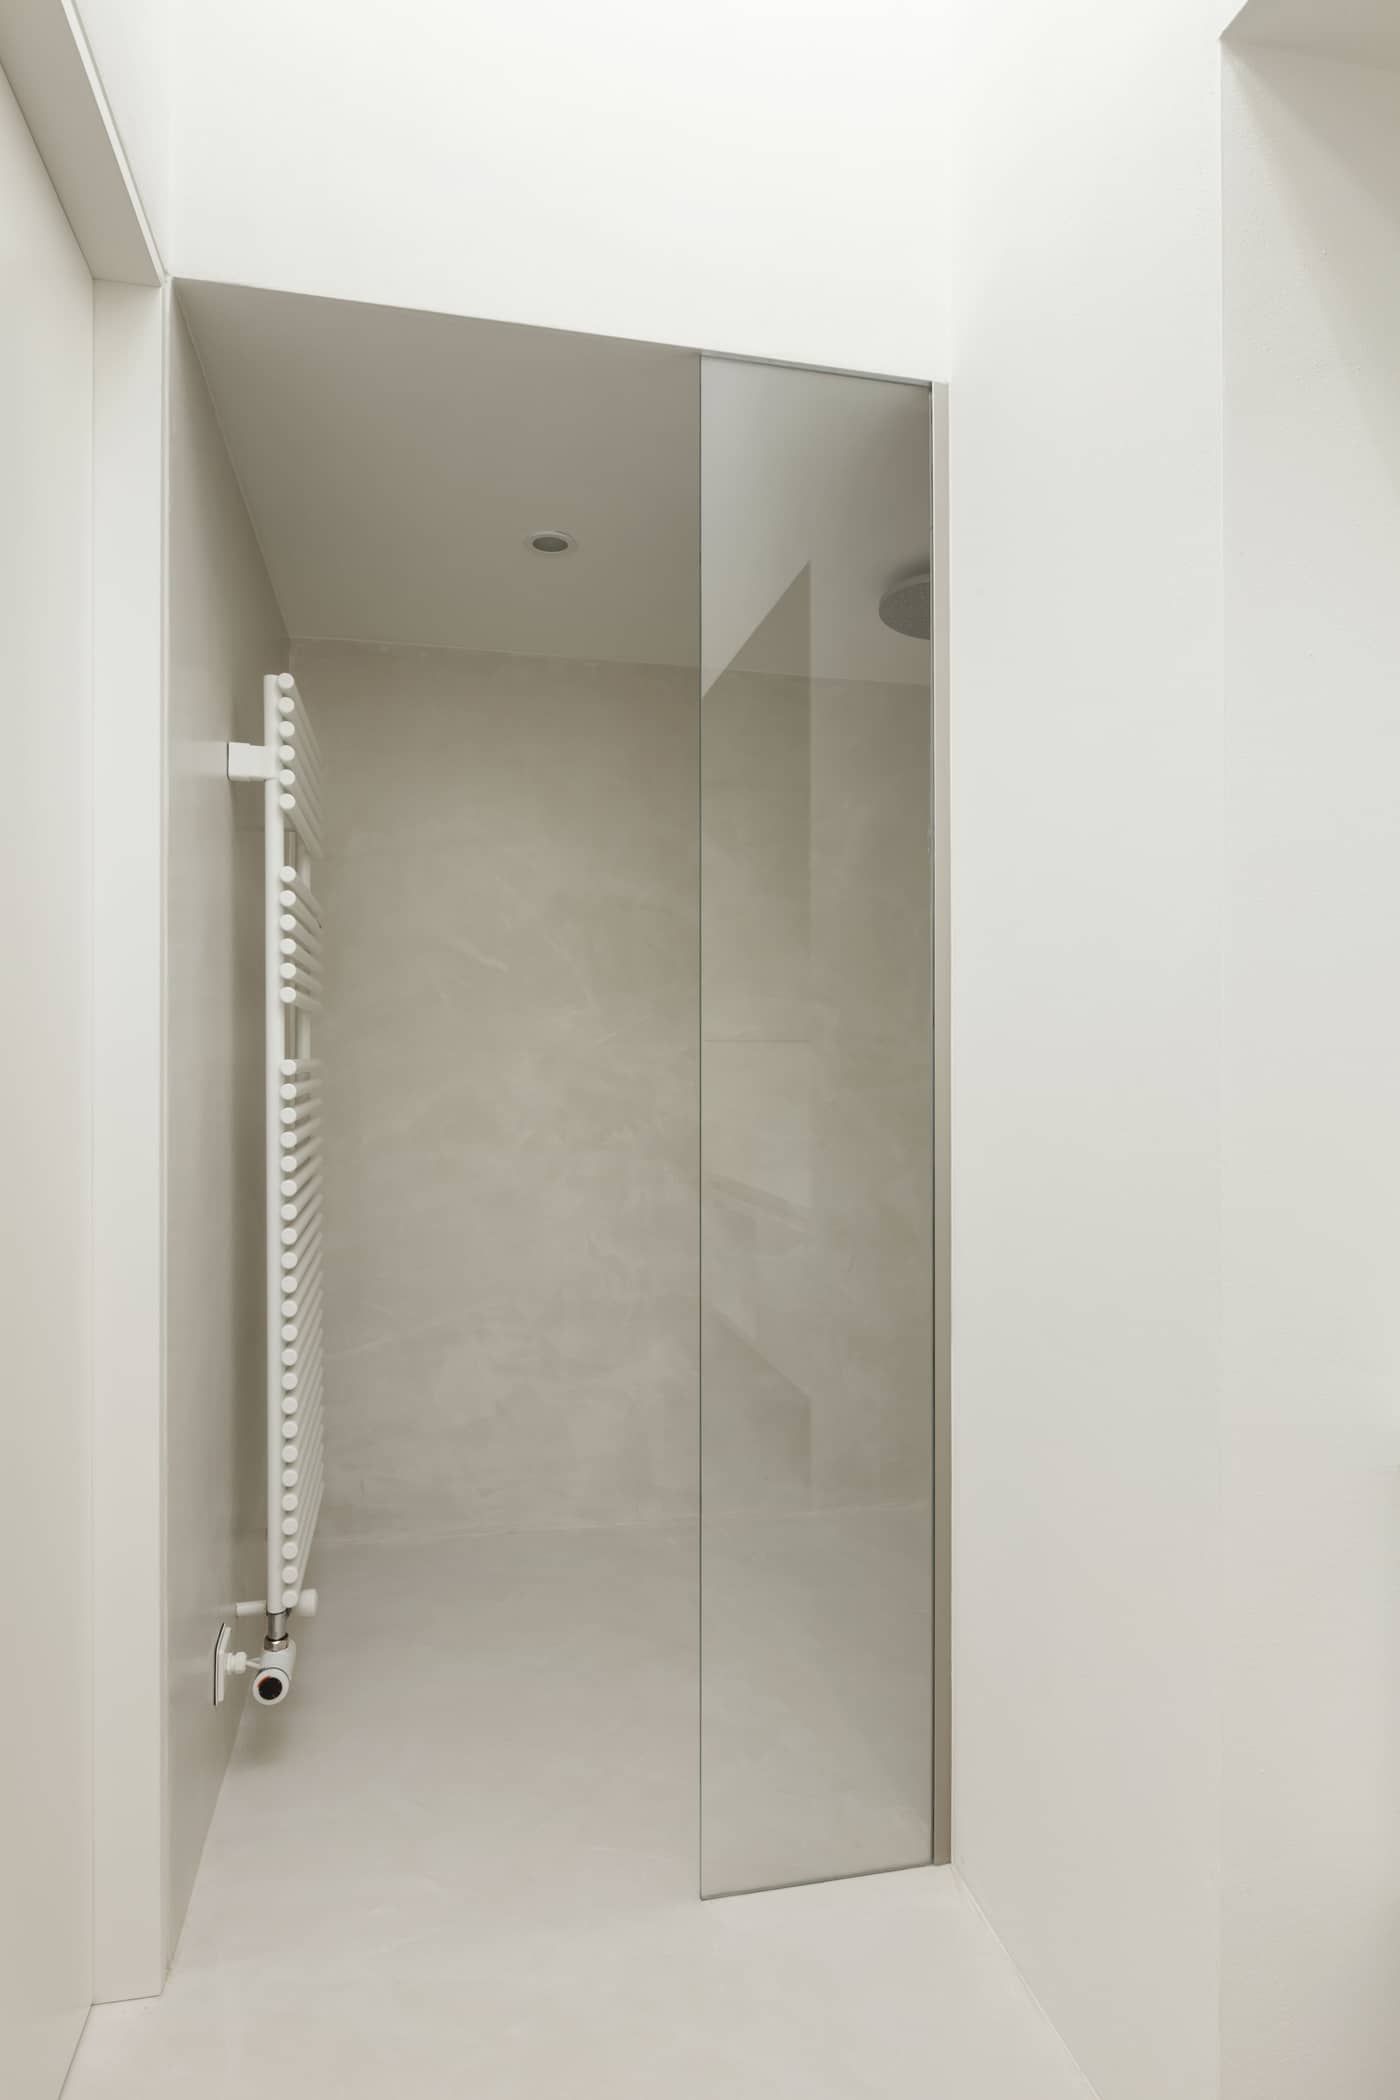 microcimento branco nas paredes de uma casa de banho